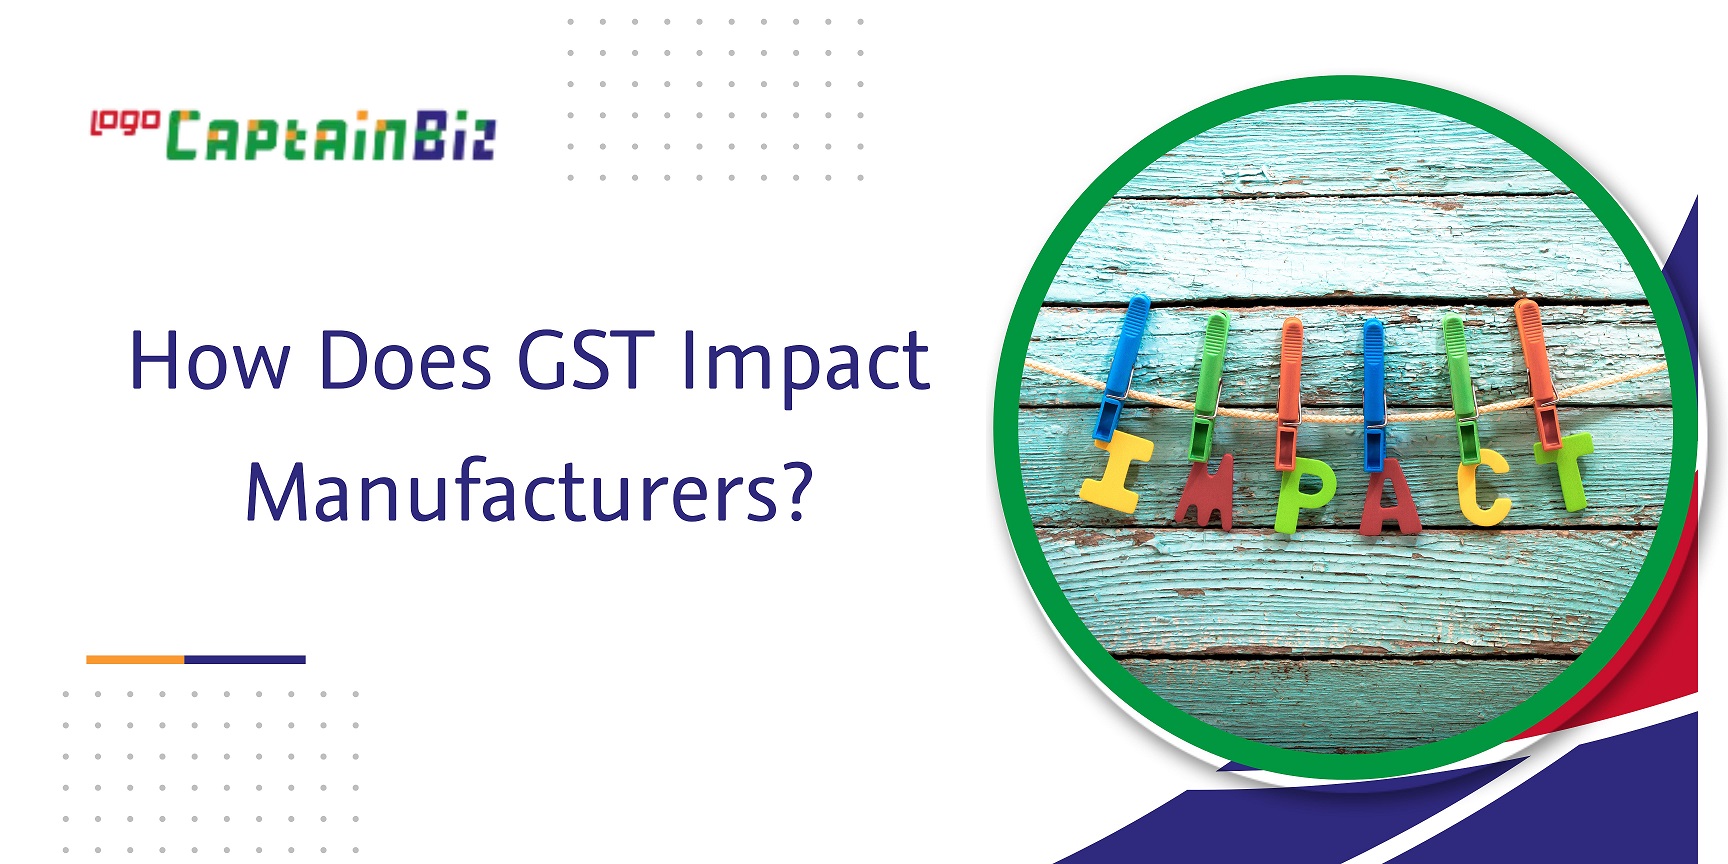 CaptainBiz: how does gst impact manufacturers